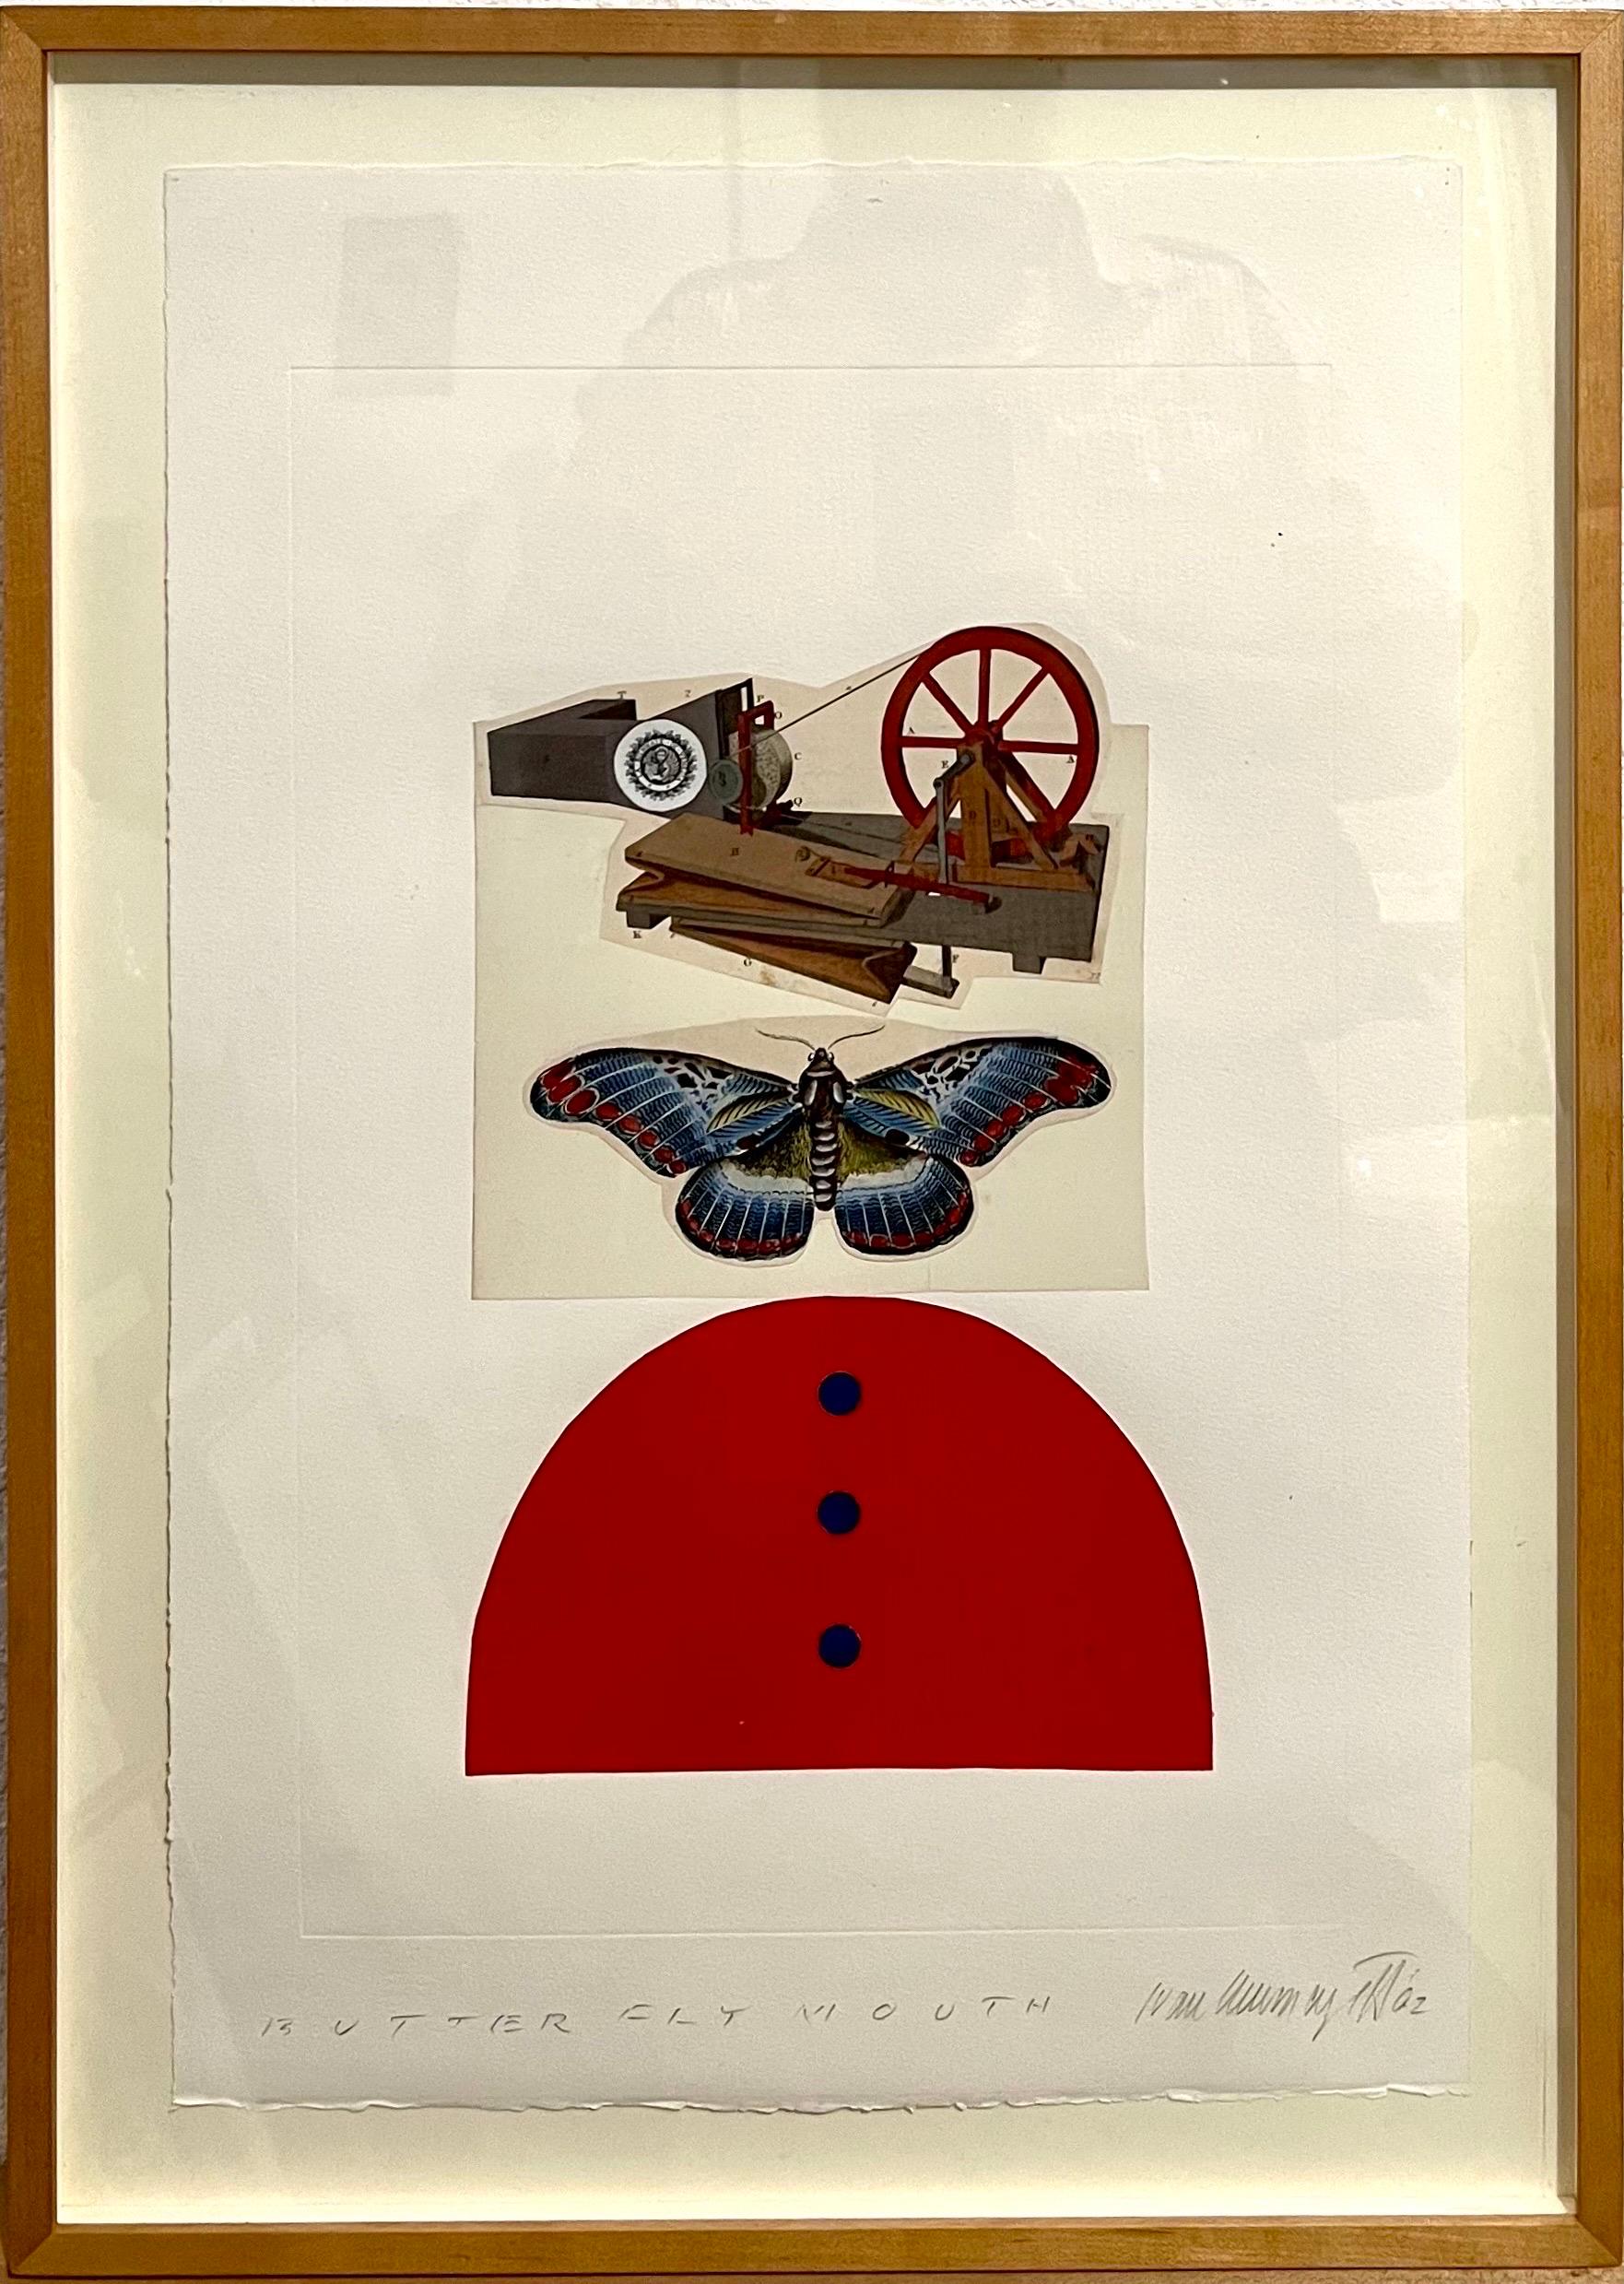 Ivan Chermayeff (1932-2017) : 
Bouche de papillon
Collage de techniques mixtes, 2002, signé à la main 'Ivan Chermayeff' et daté en bas à droite, titré en bas à gauche.
Label "Ours" de David Findlay Jr. Gallery, NY.

22 1/2 x 15 po (feuille), 25 3/4